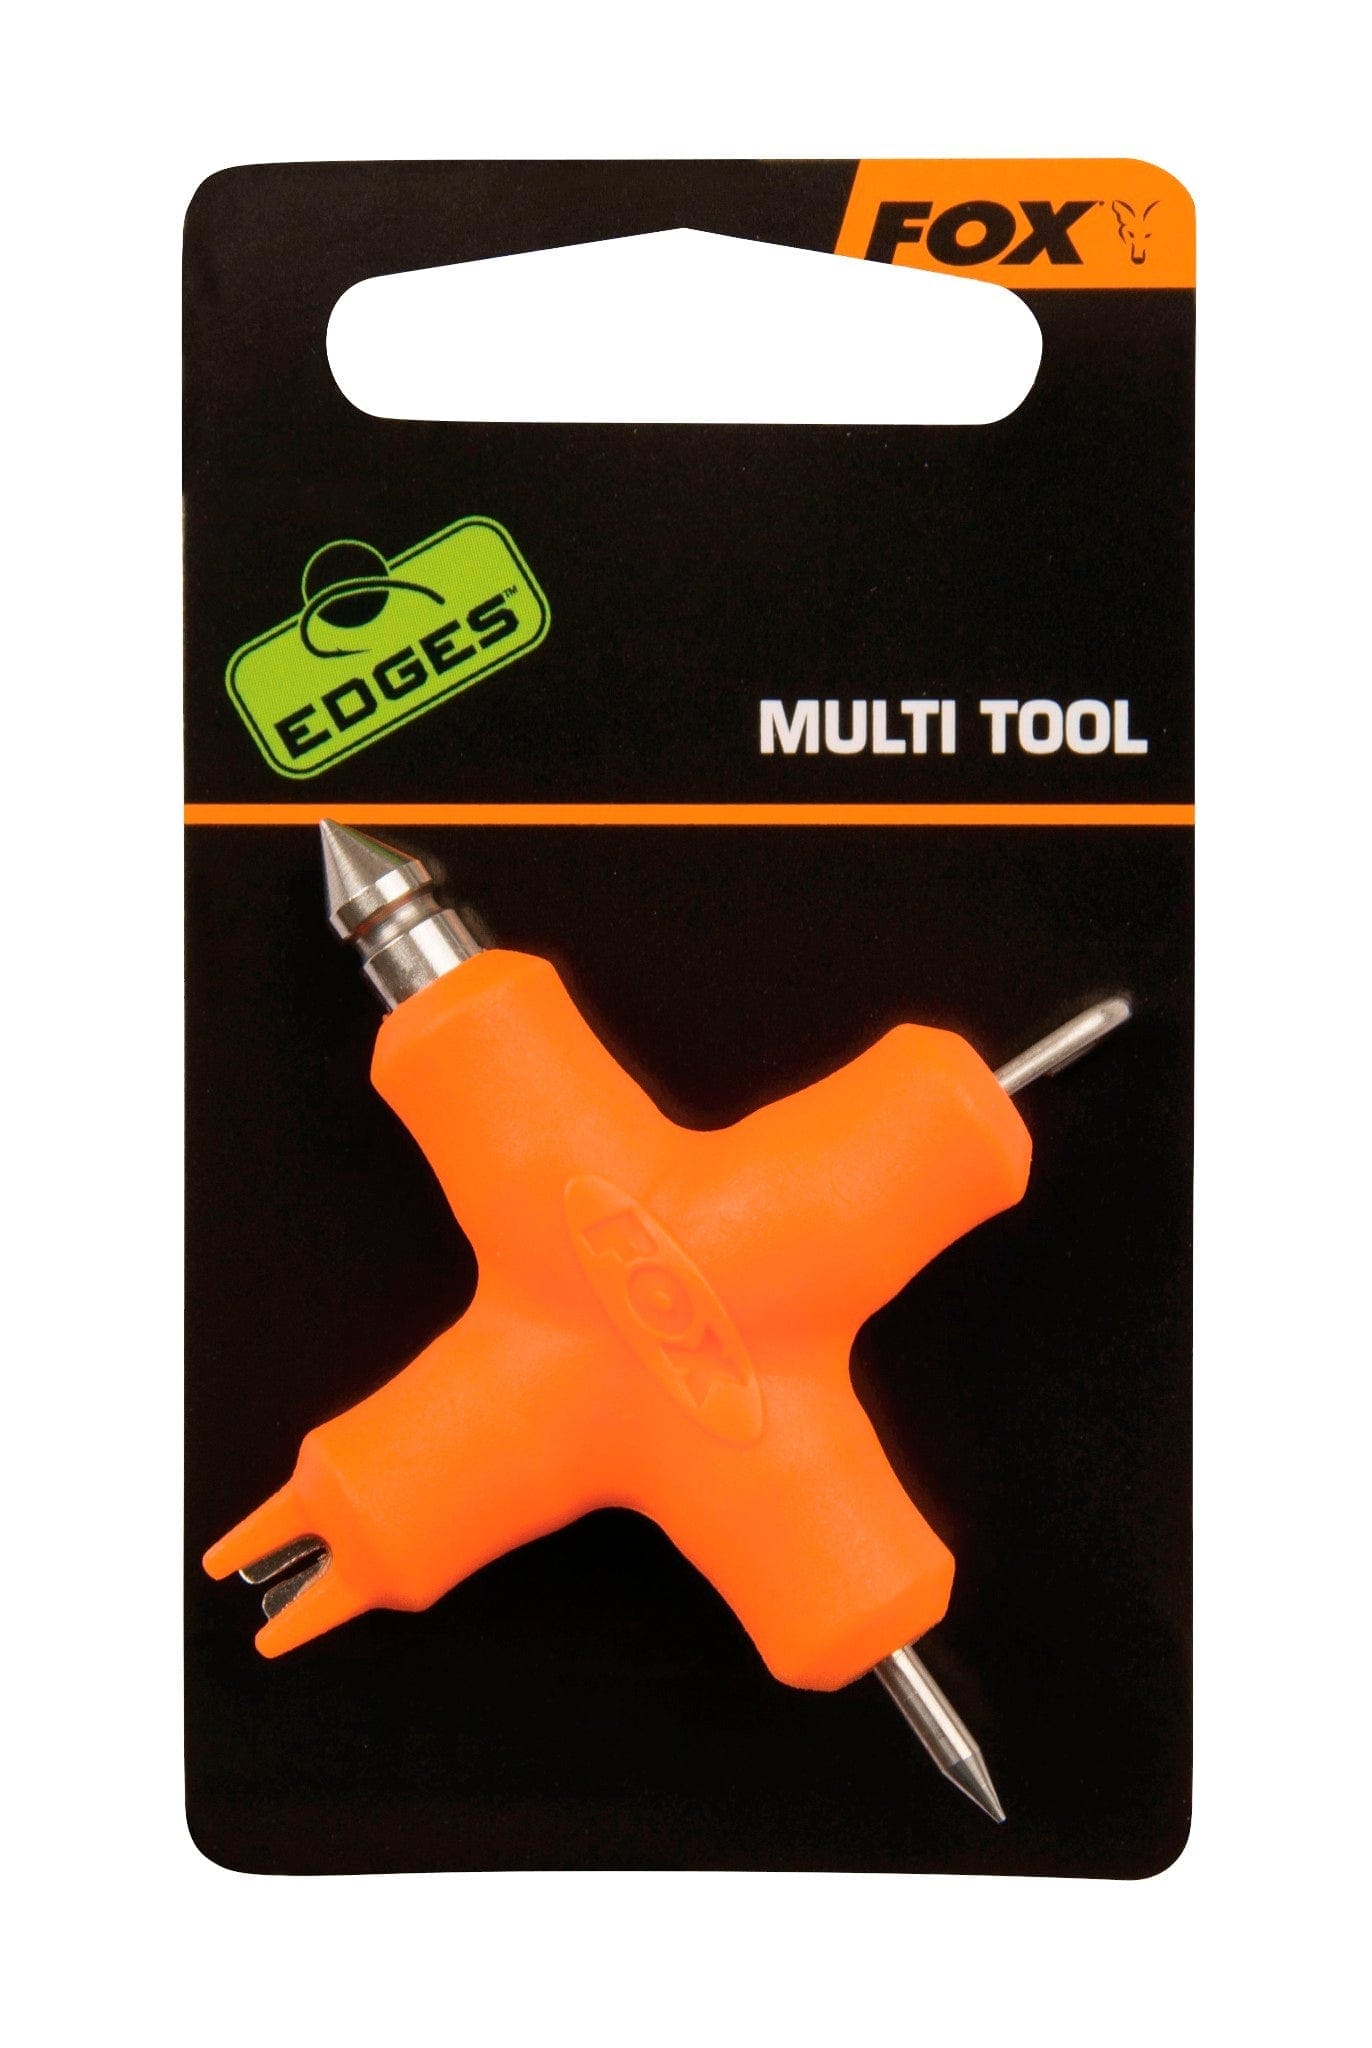 FOX Edges Multi tool - ORANGE.